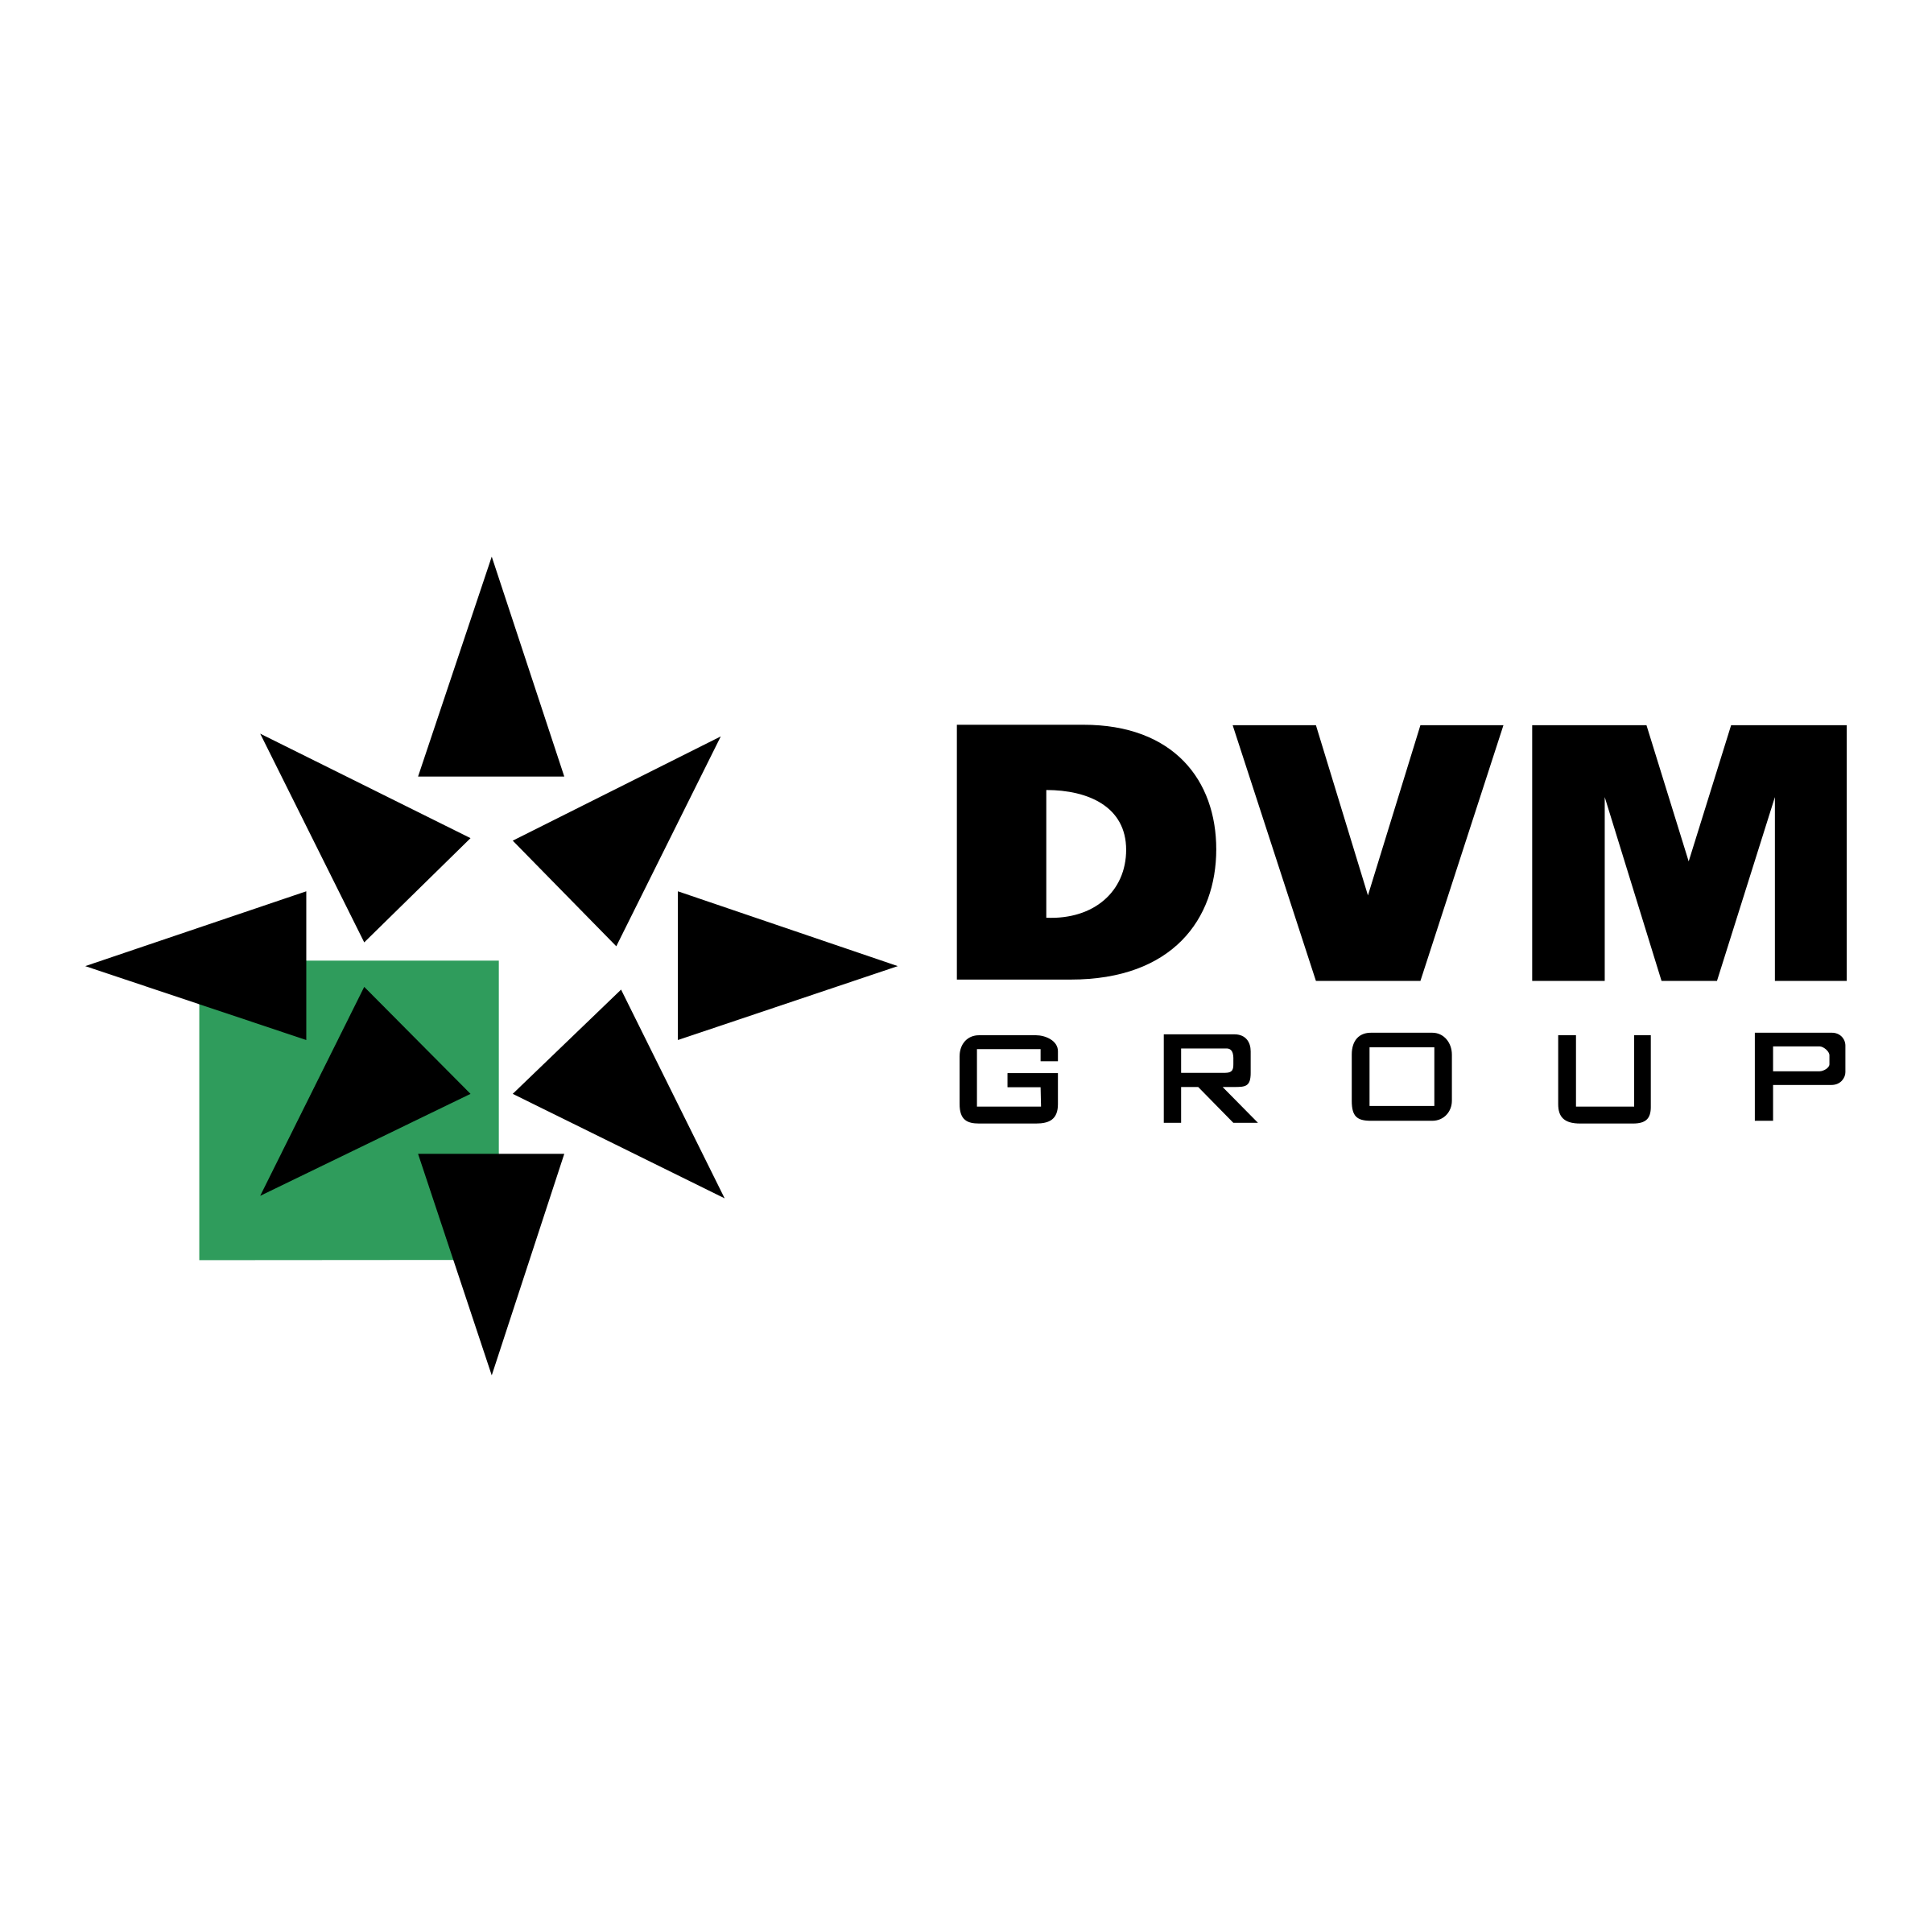 D.V.m. Logo - DVM Group Logo PNG Transparent & SVG Vector